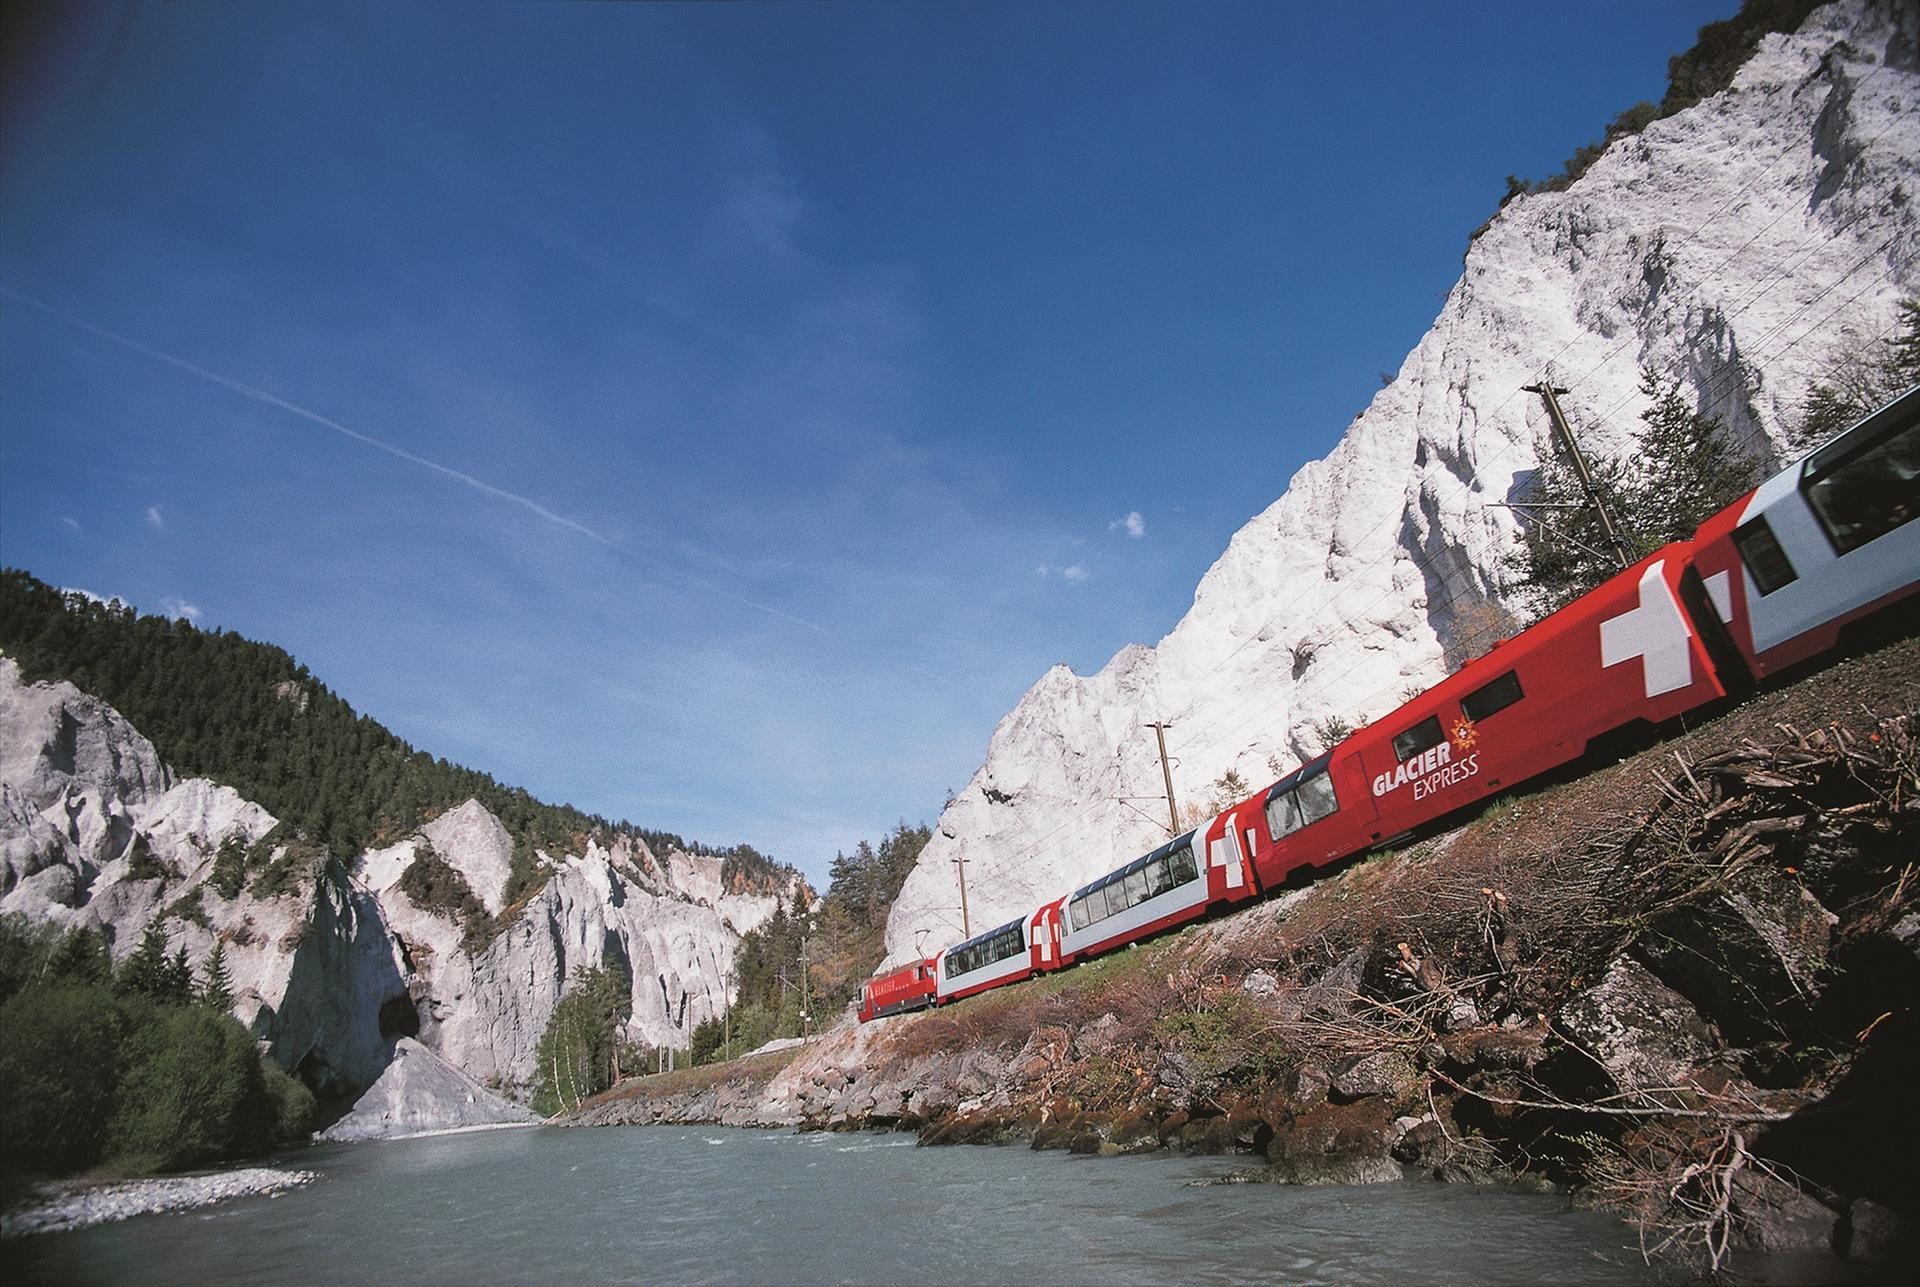 Der Schweizer "Glacier Express" startet im legendären St. Moritz und fährt bis nach Zermatt zum Matterhorn.